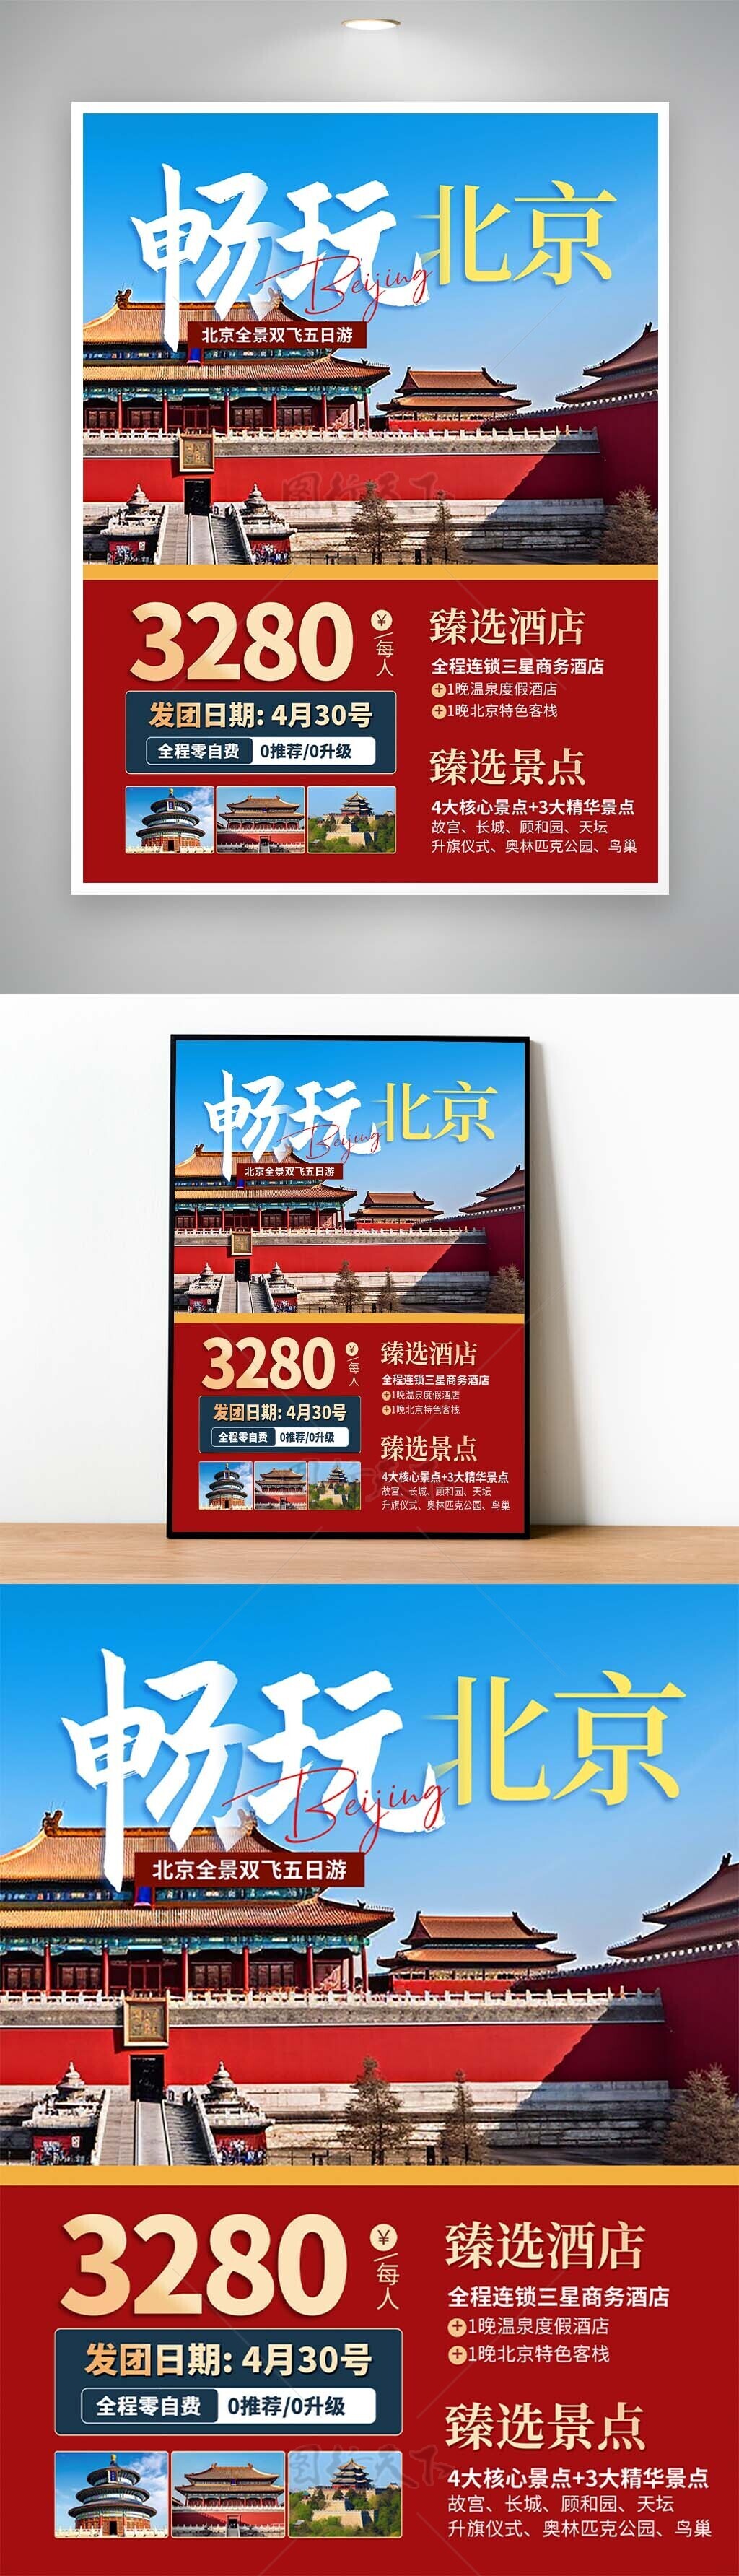 畅玩北京红墙砖古典主题文旅海报